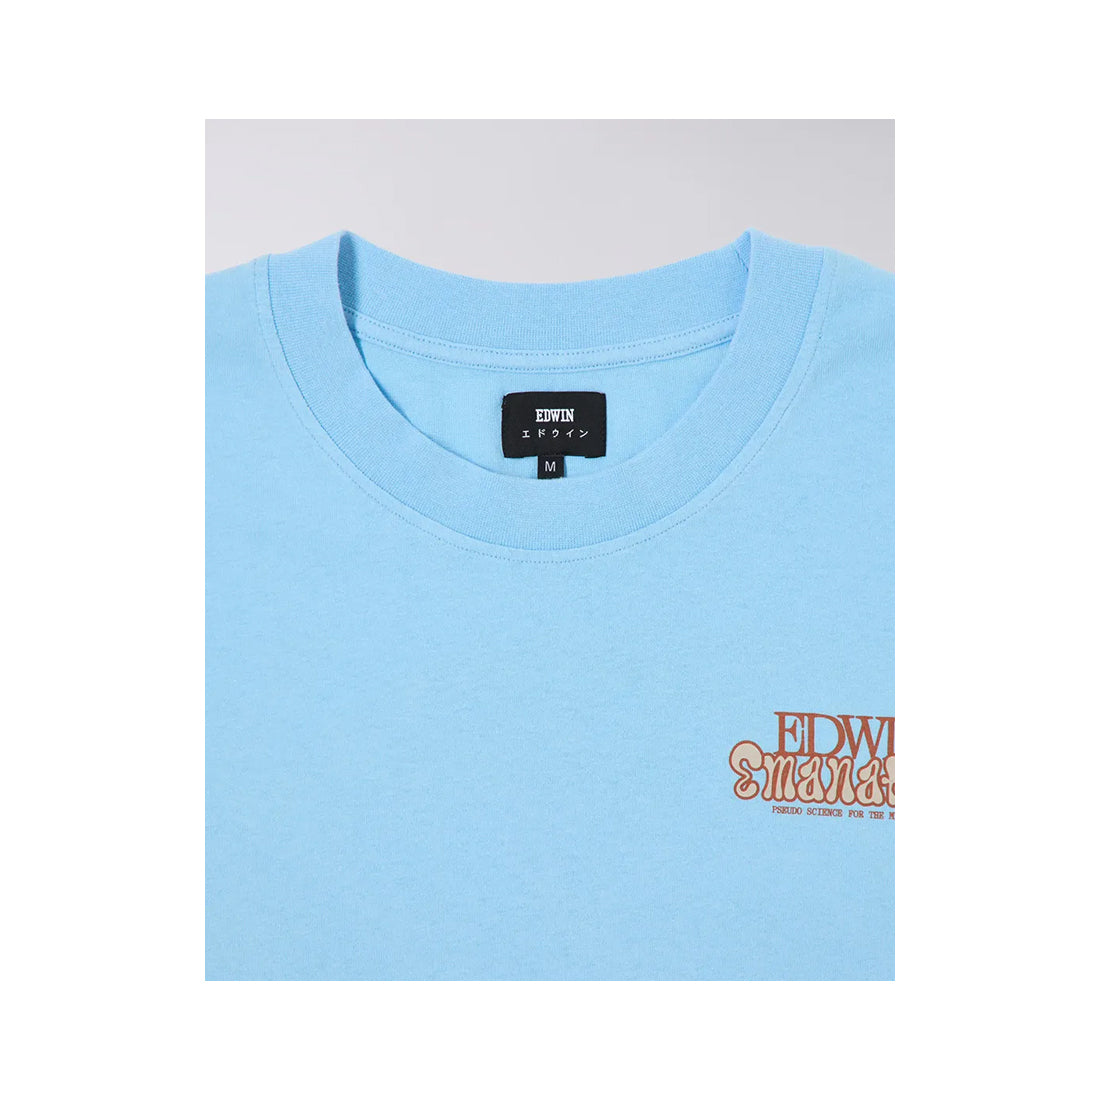 Edwin Short Sleeve T-Shirt - Emanation - Light Blue